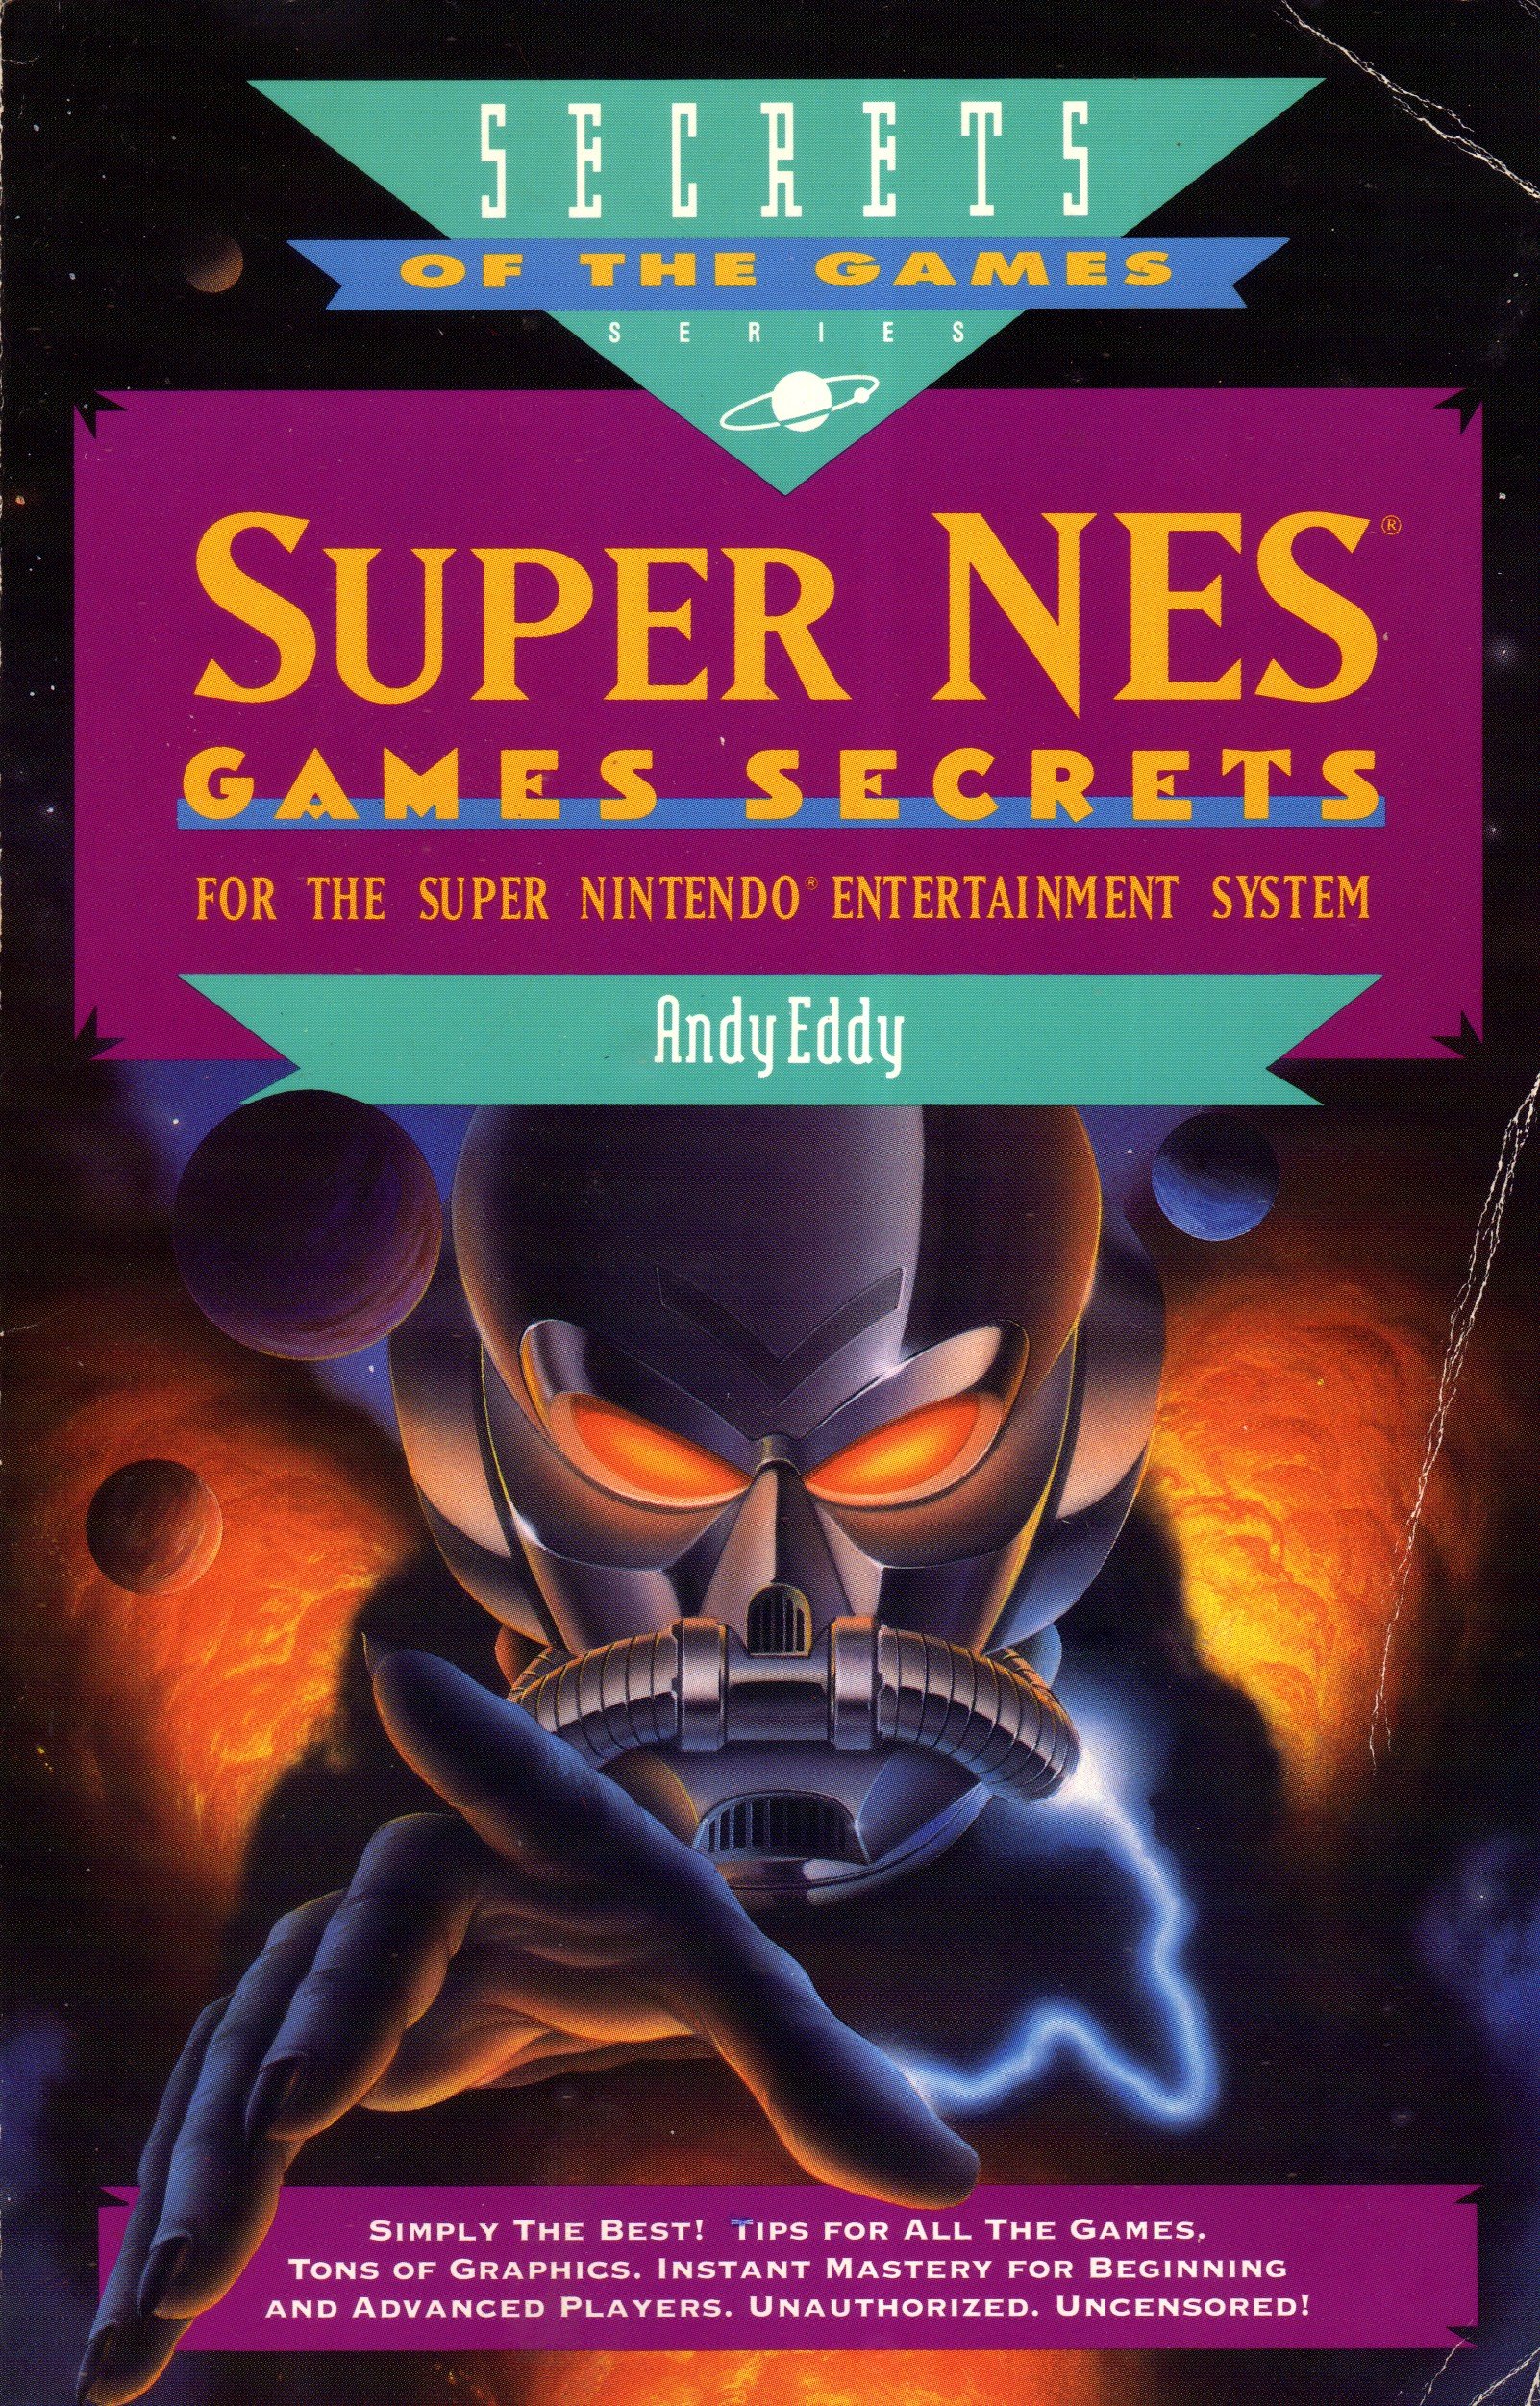 Super NES Games Secrets